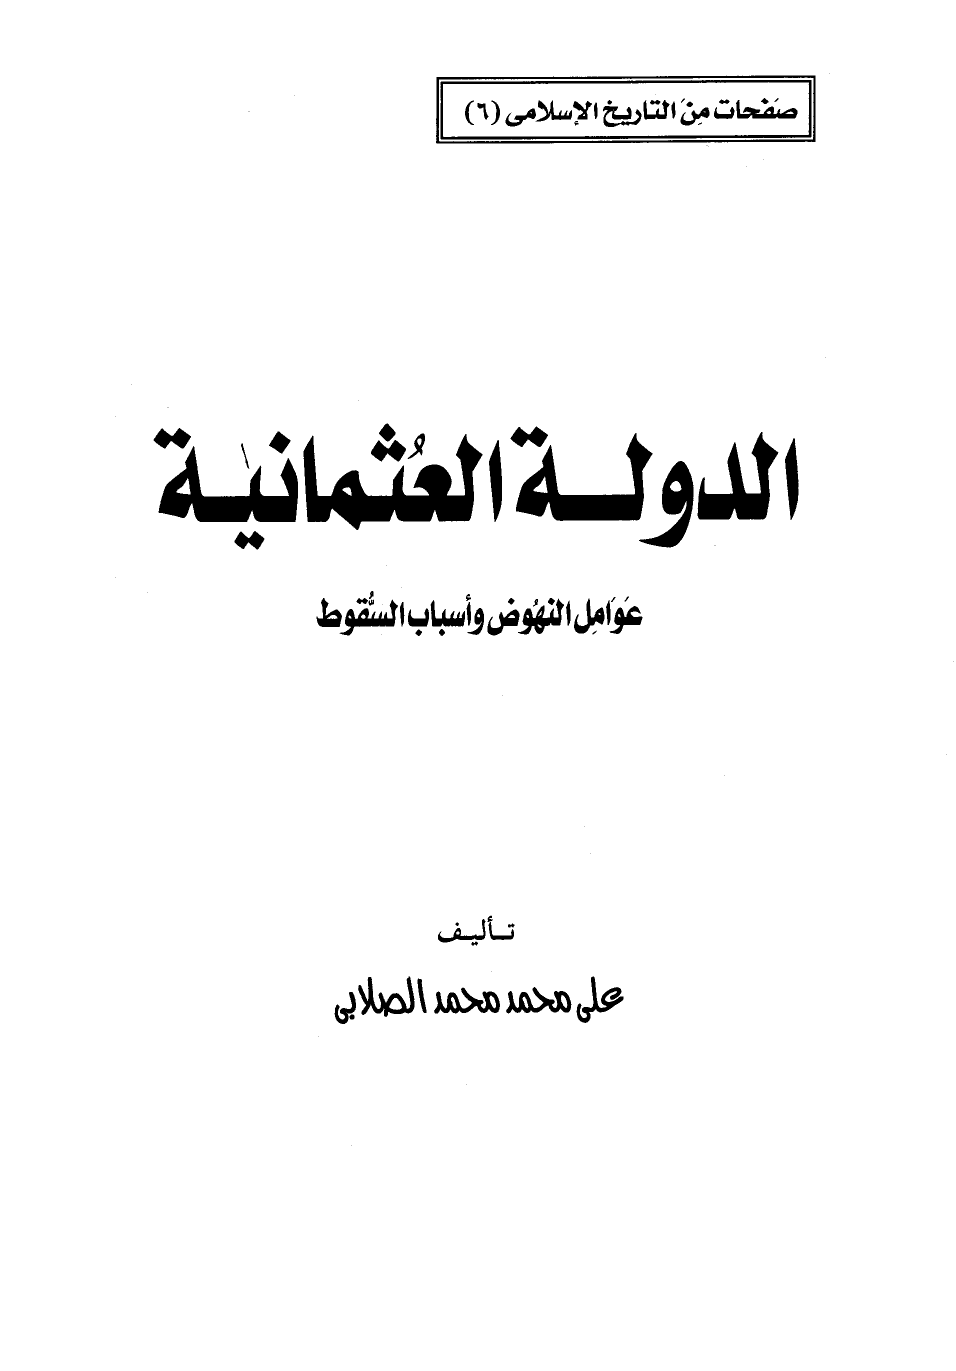 تنزيل وتحميل كتاِب الدولة العثمانية pdf برابط مباشر مجاناً 